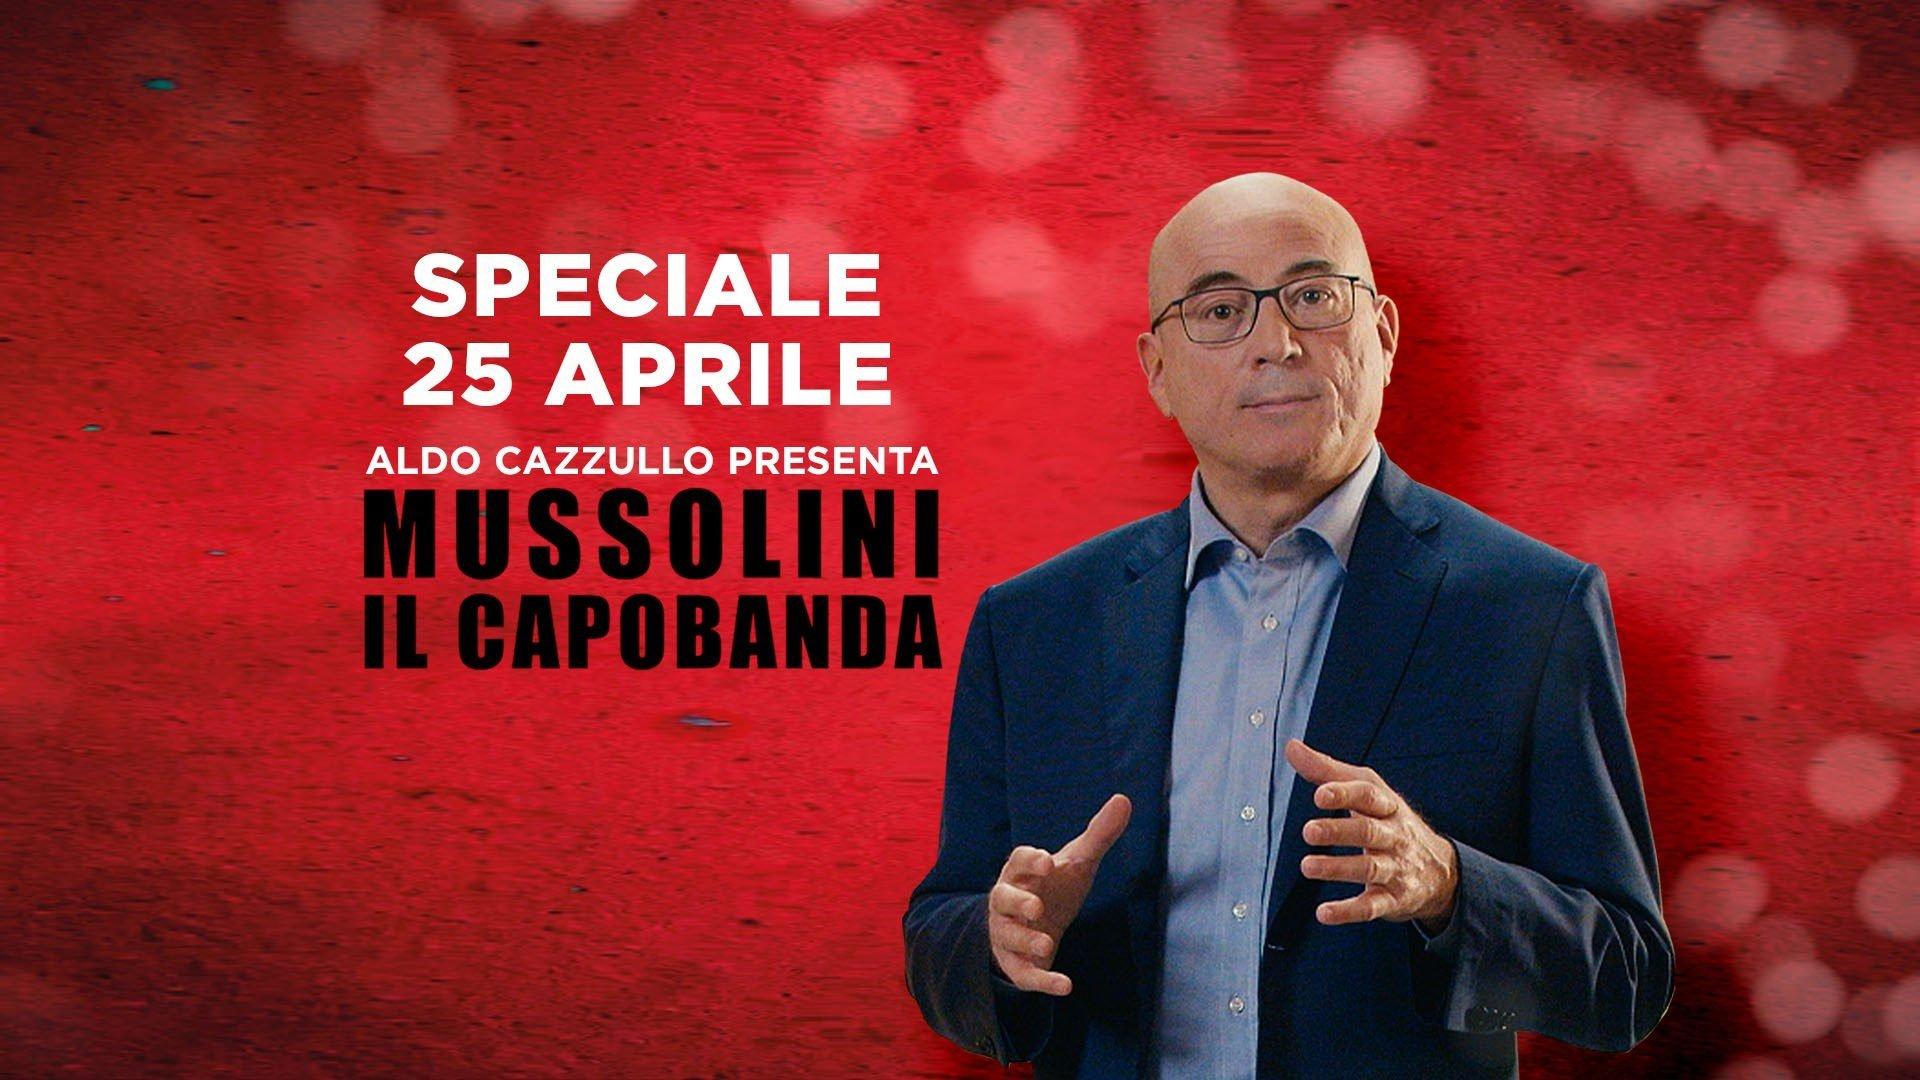 Speciale 25 Aprile - Mussolini, il Capobanda